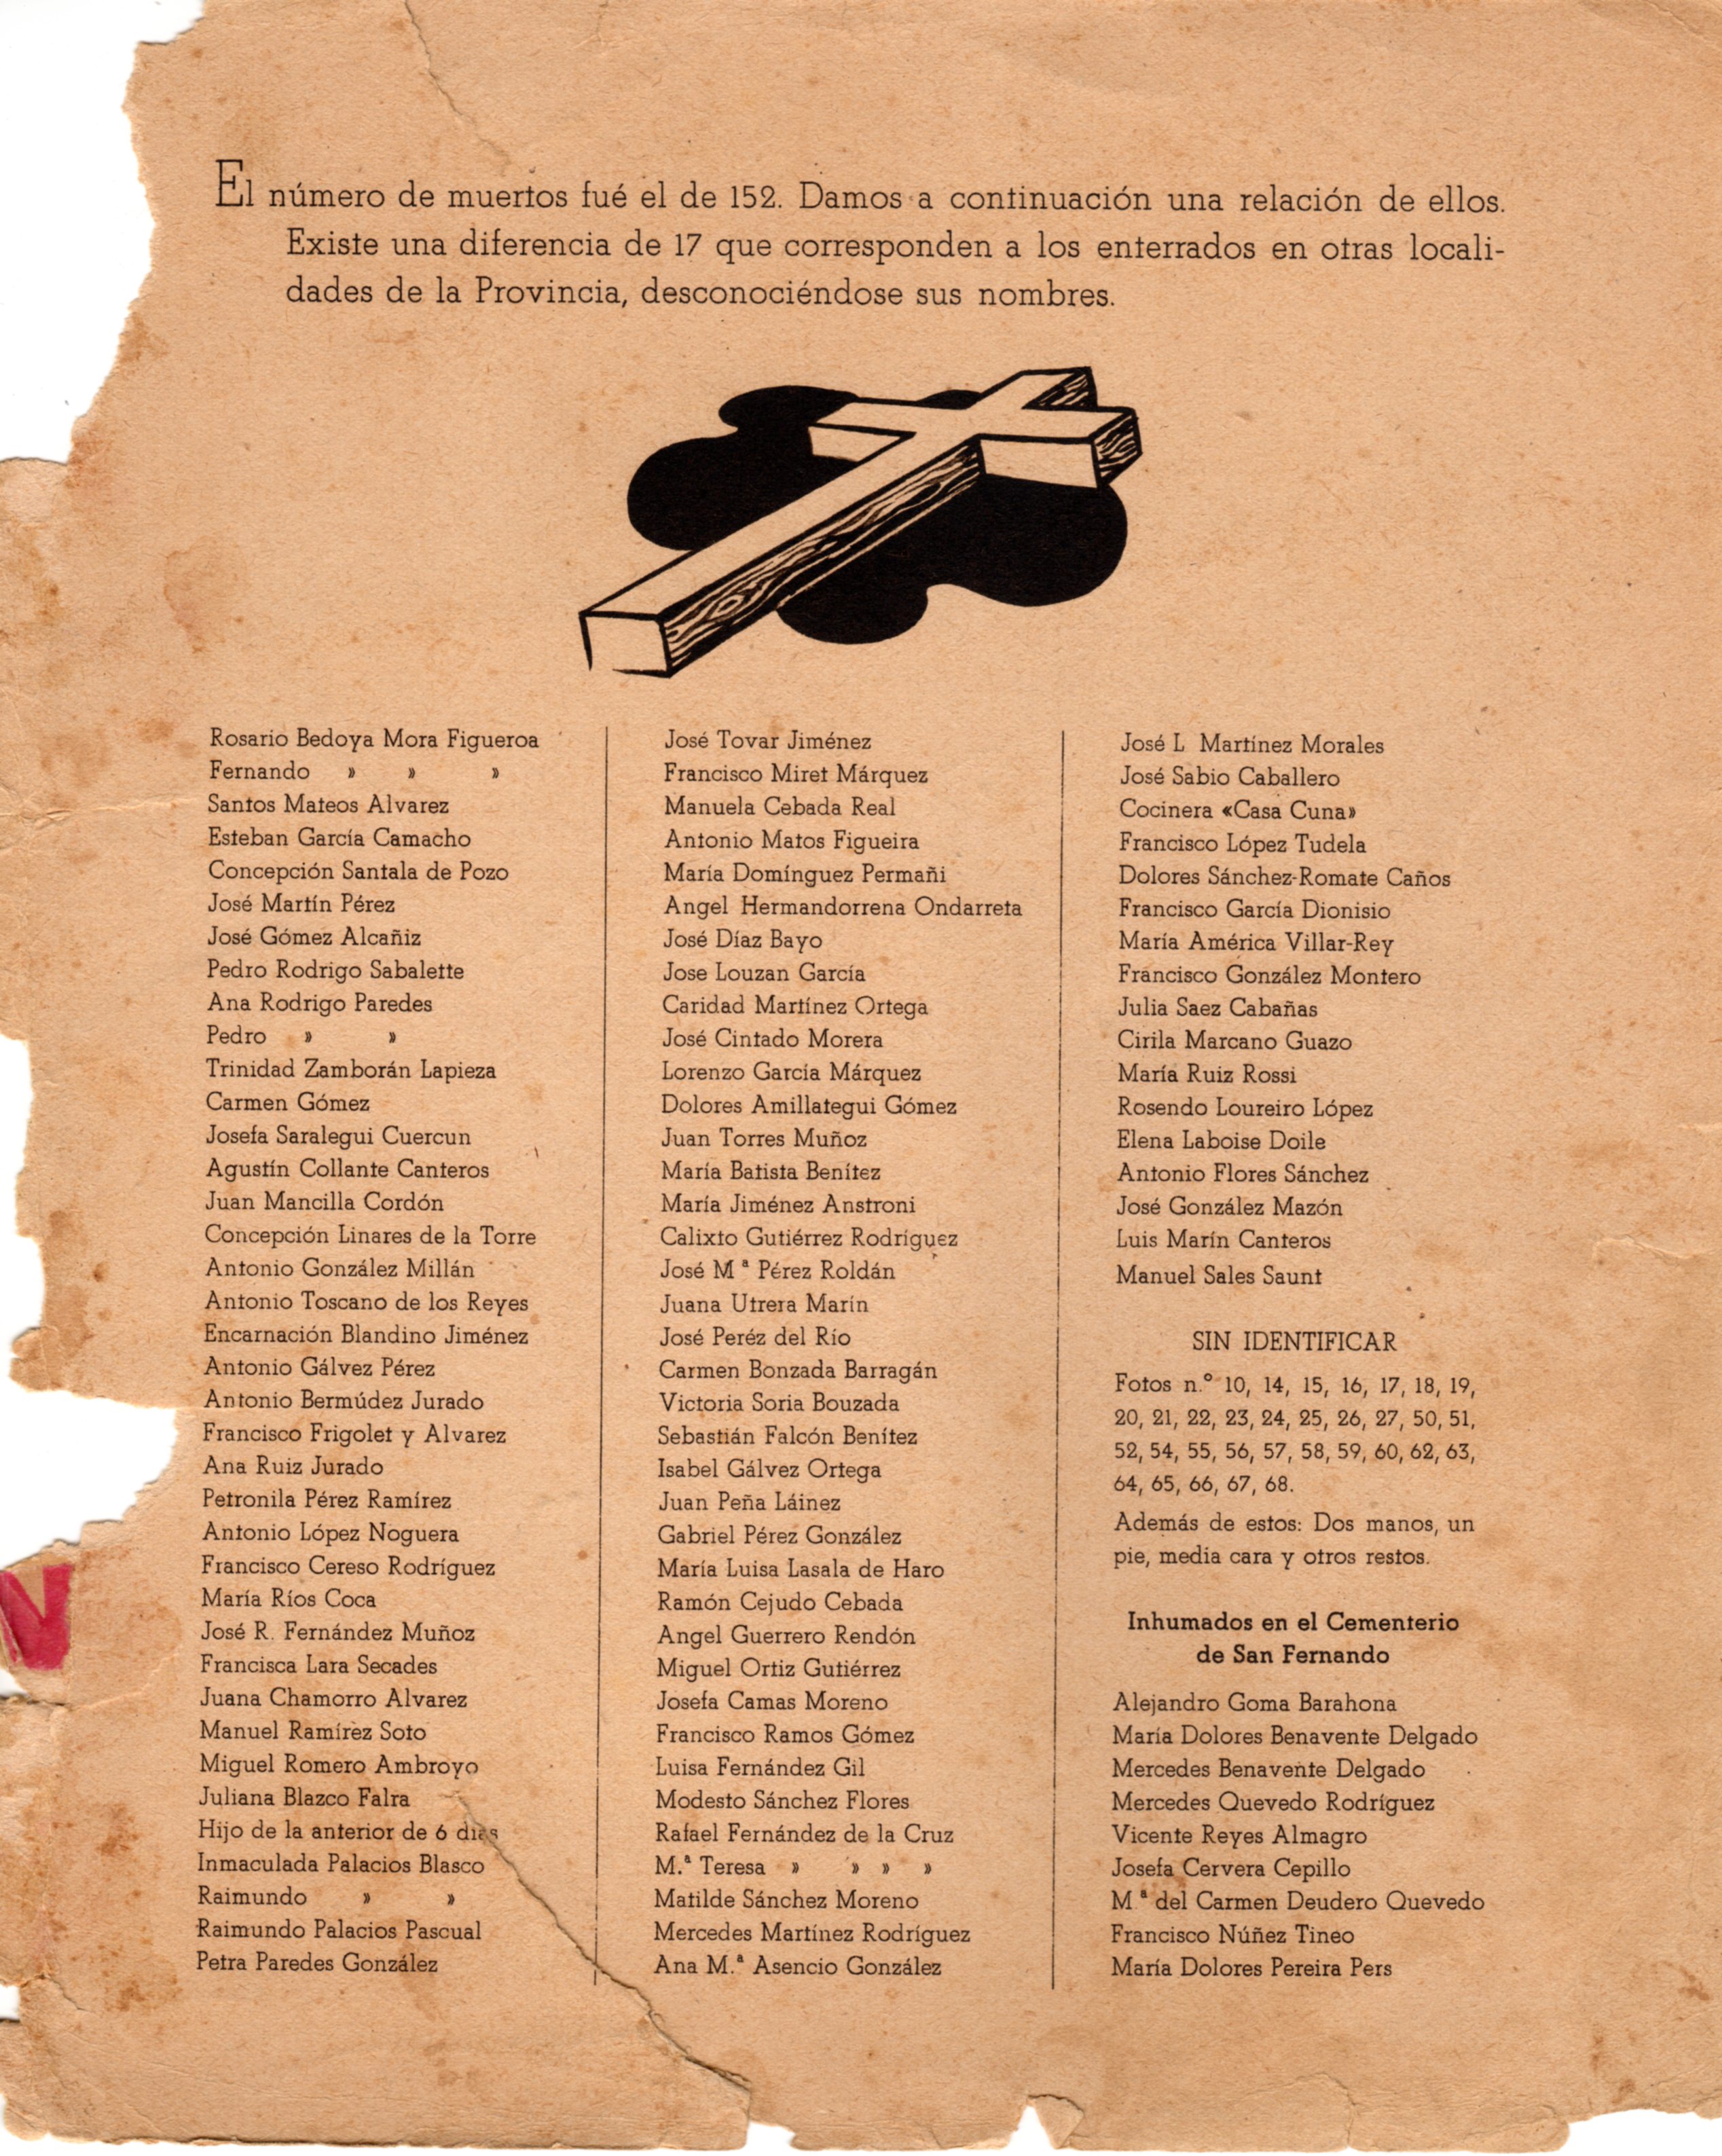 Lista oficial de fallecidos publicada en "Cádiz, la Mártir".